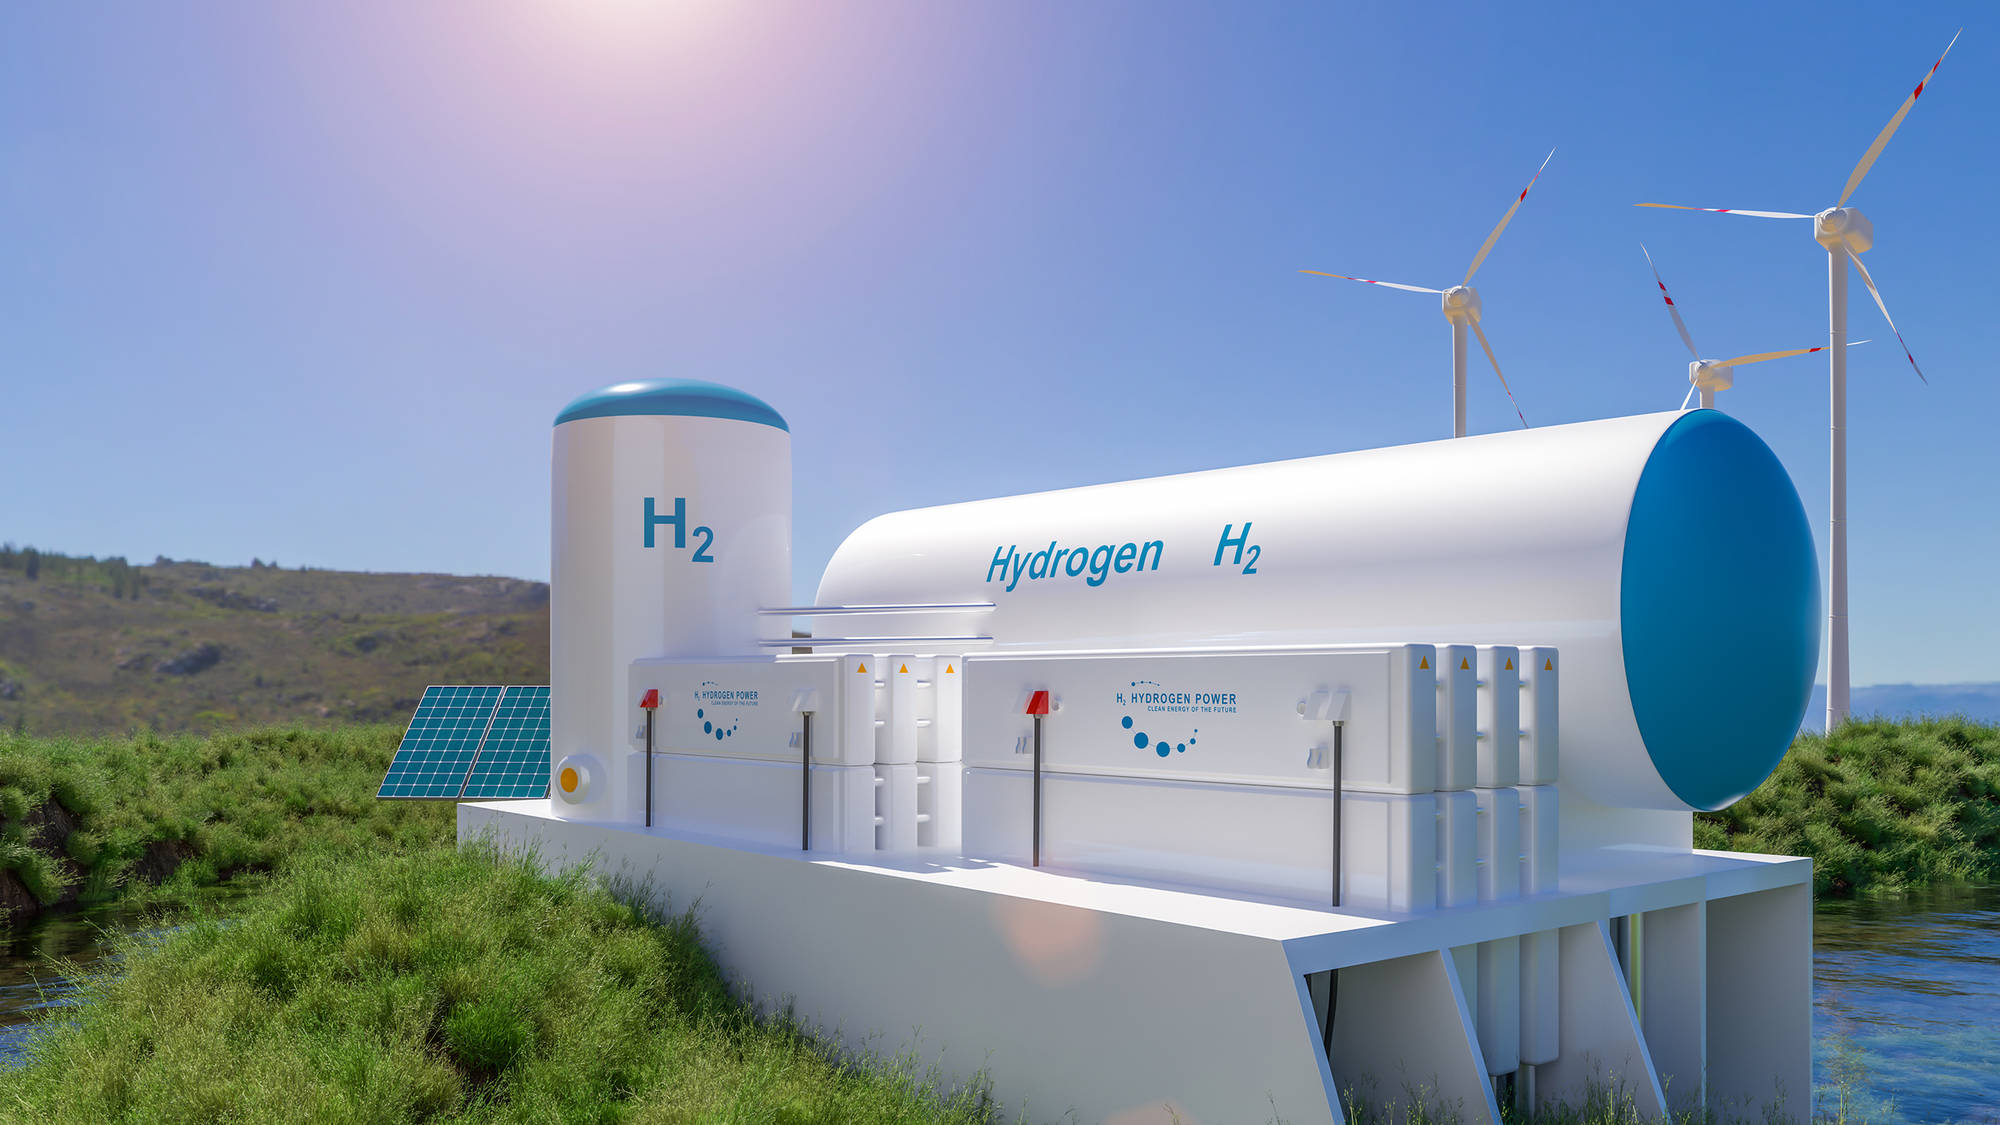 Une station de production d'hydrogène vert : proche de l'eau et fonctionnant grâce à des énergies renouvelables, ici solaires et éoliennes. 